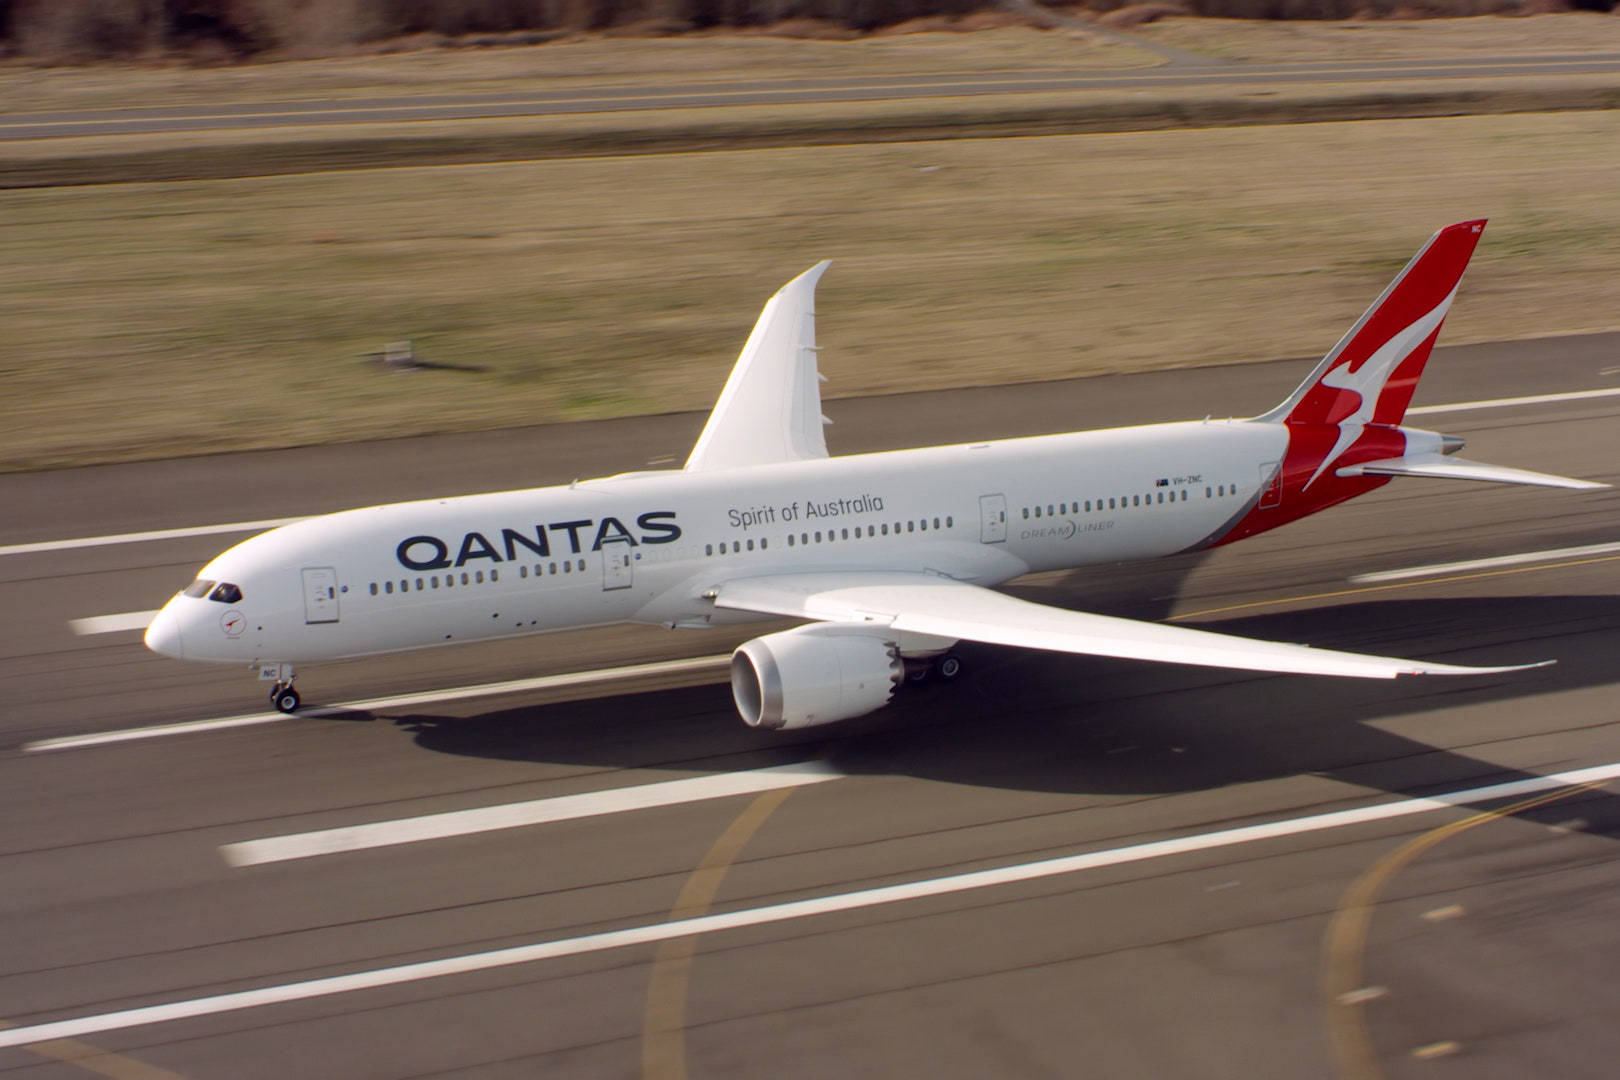 Qantasspirit Of Australia Flugzeug Wallpaper